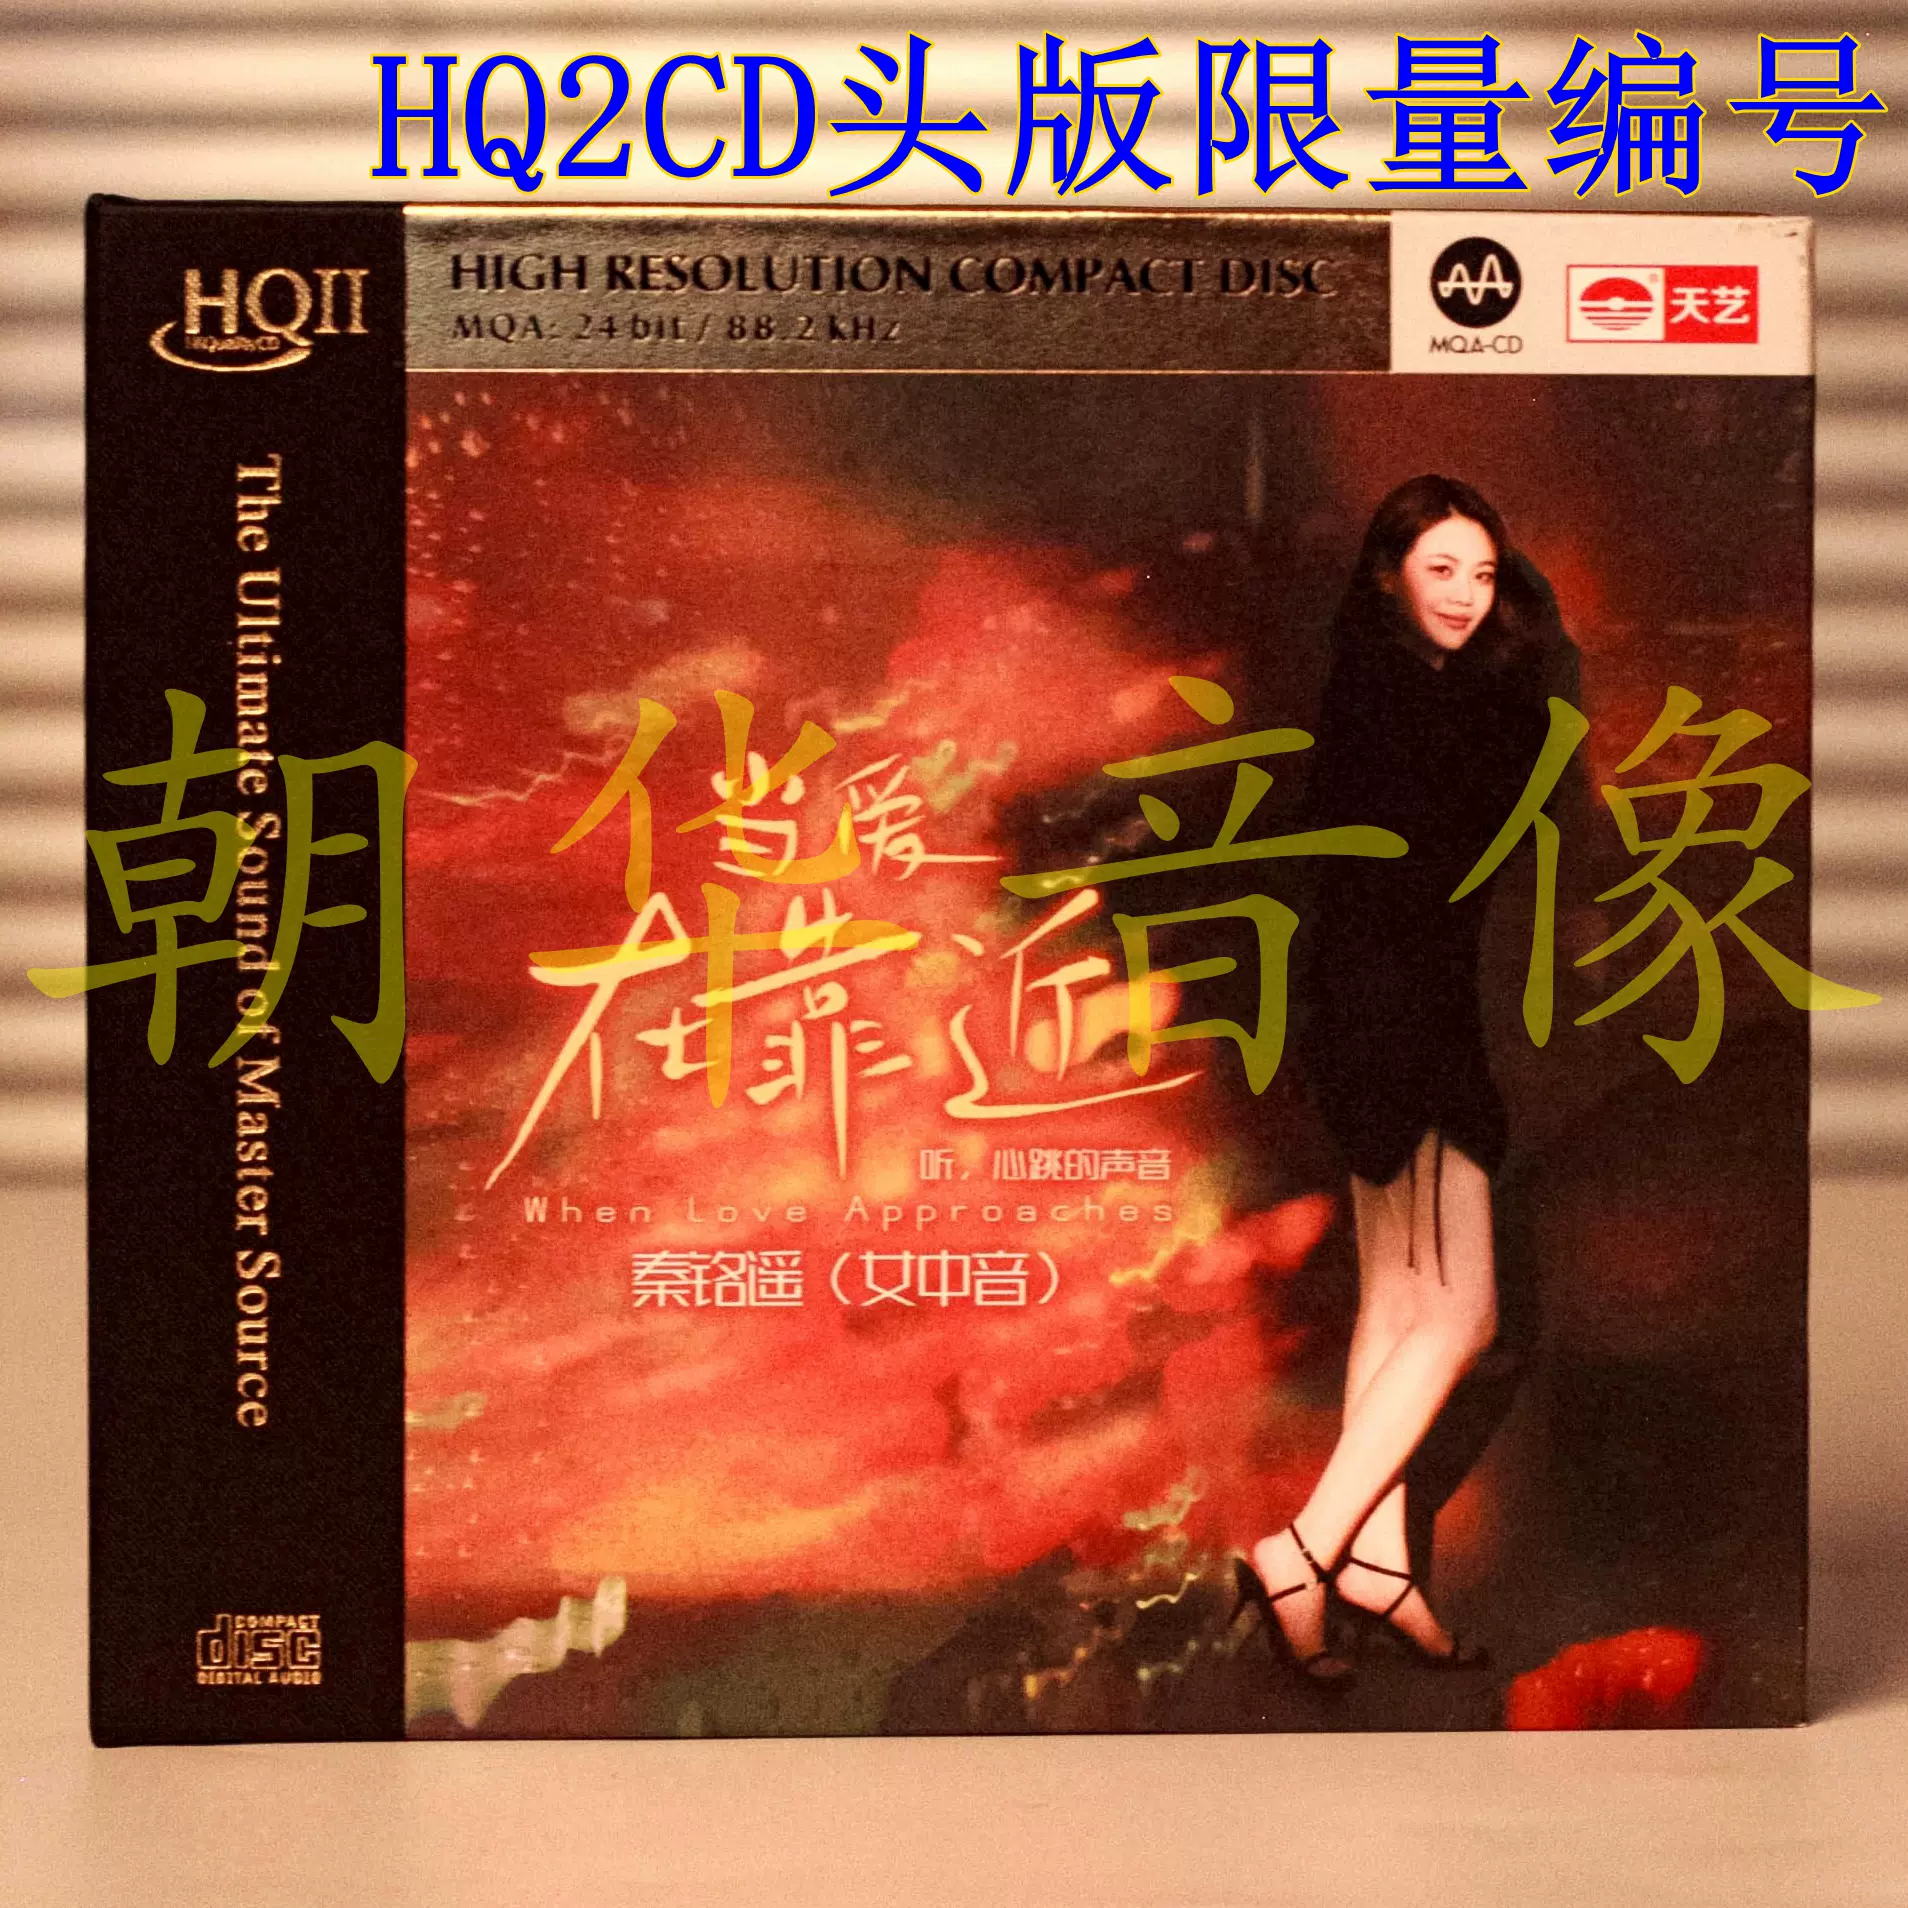 正版限量编号蒋小雨夜空的风HQ2CD CD 无损HQCD人声HIFI发烧碟-Taobao 